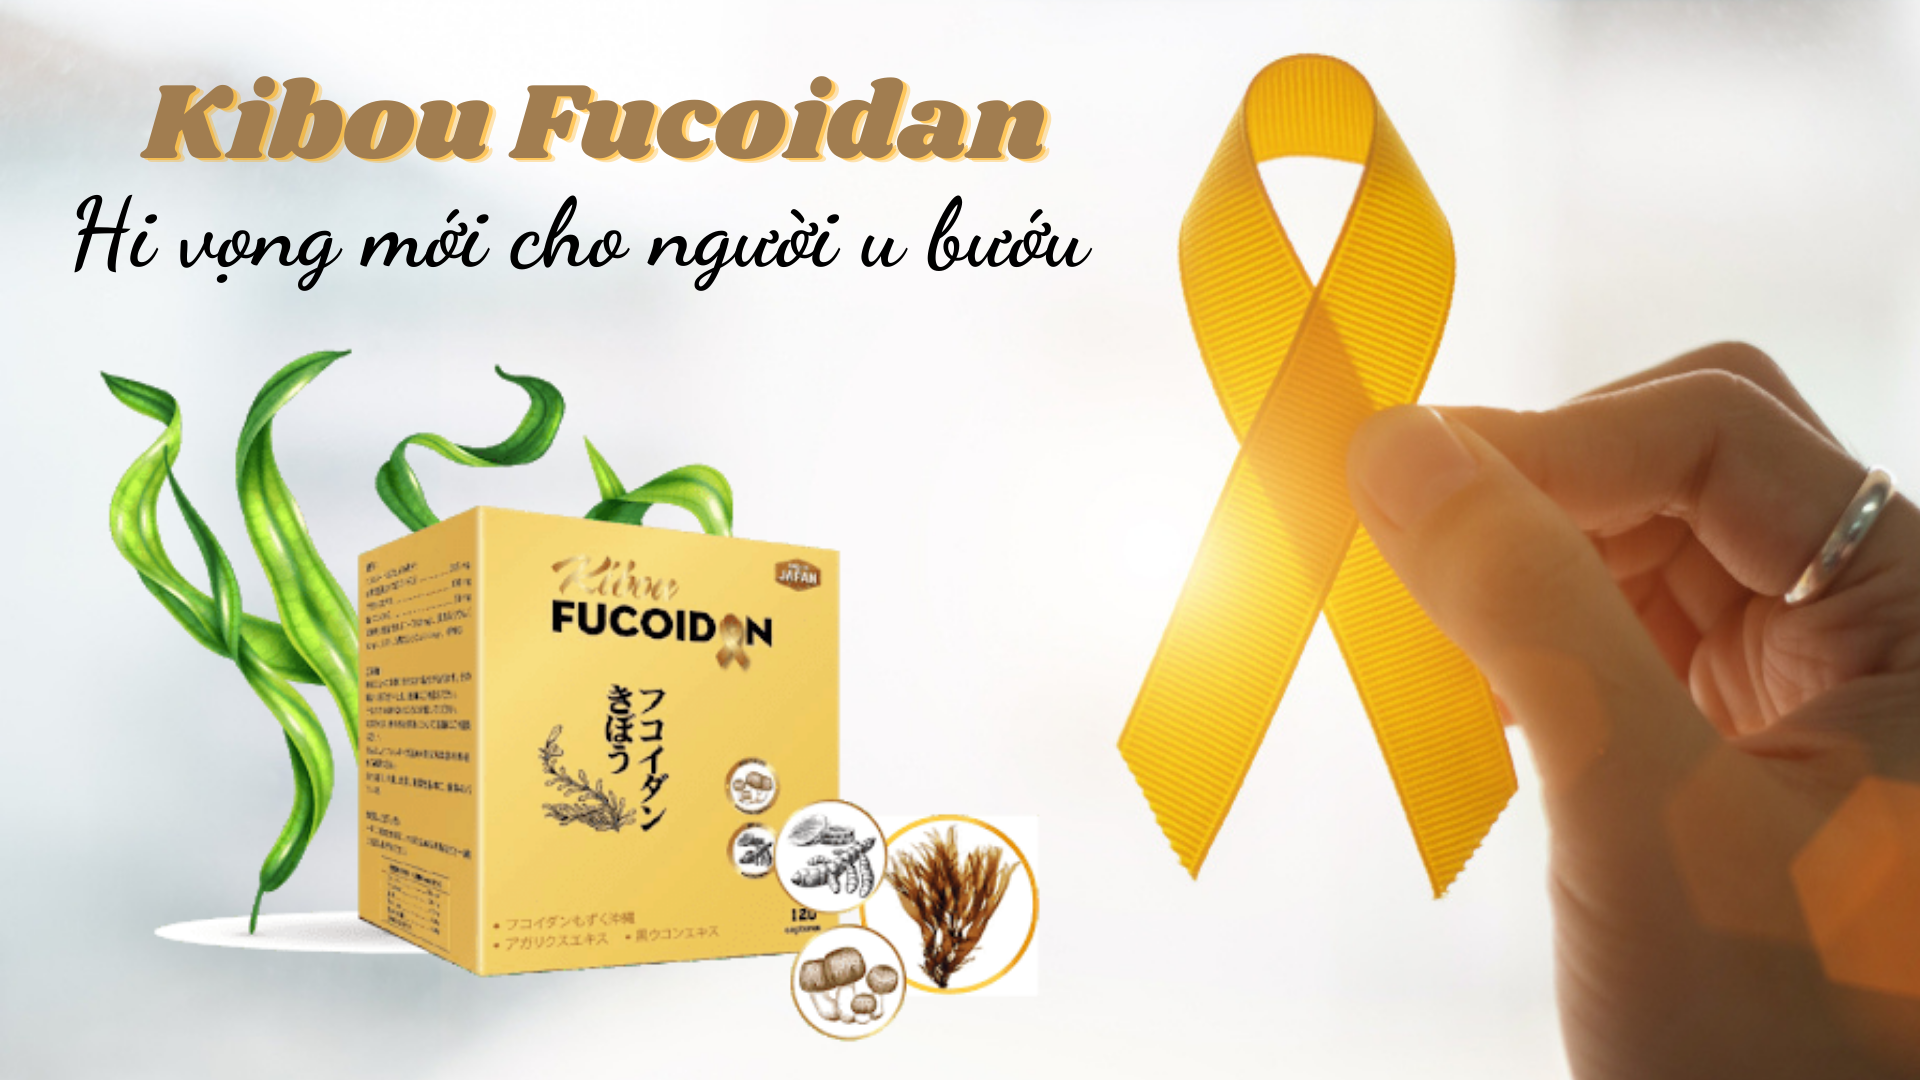 Kibou Fucoidan – sự kết hợp lần đầu tiên giữa “bộ 3 chống ung thư”: Fucoidan, Nghệ đen và Nấm Agaricus, có độ tinh khiết cao nhất hiện nay